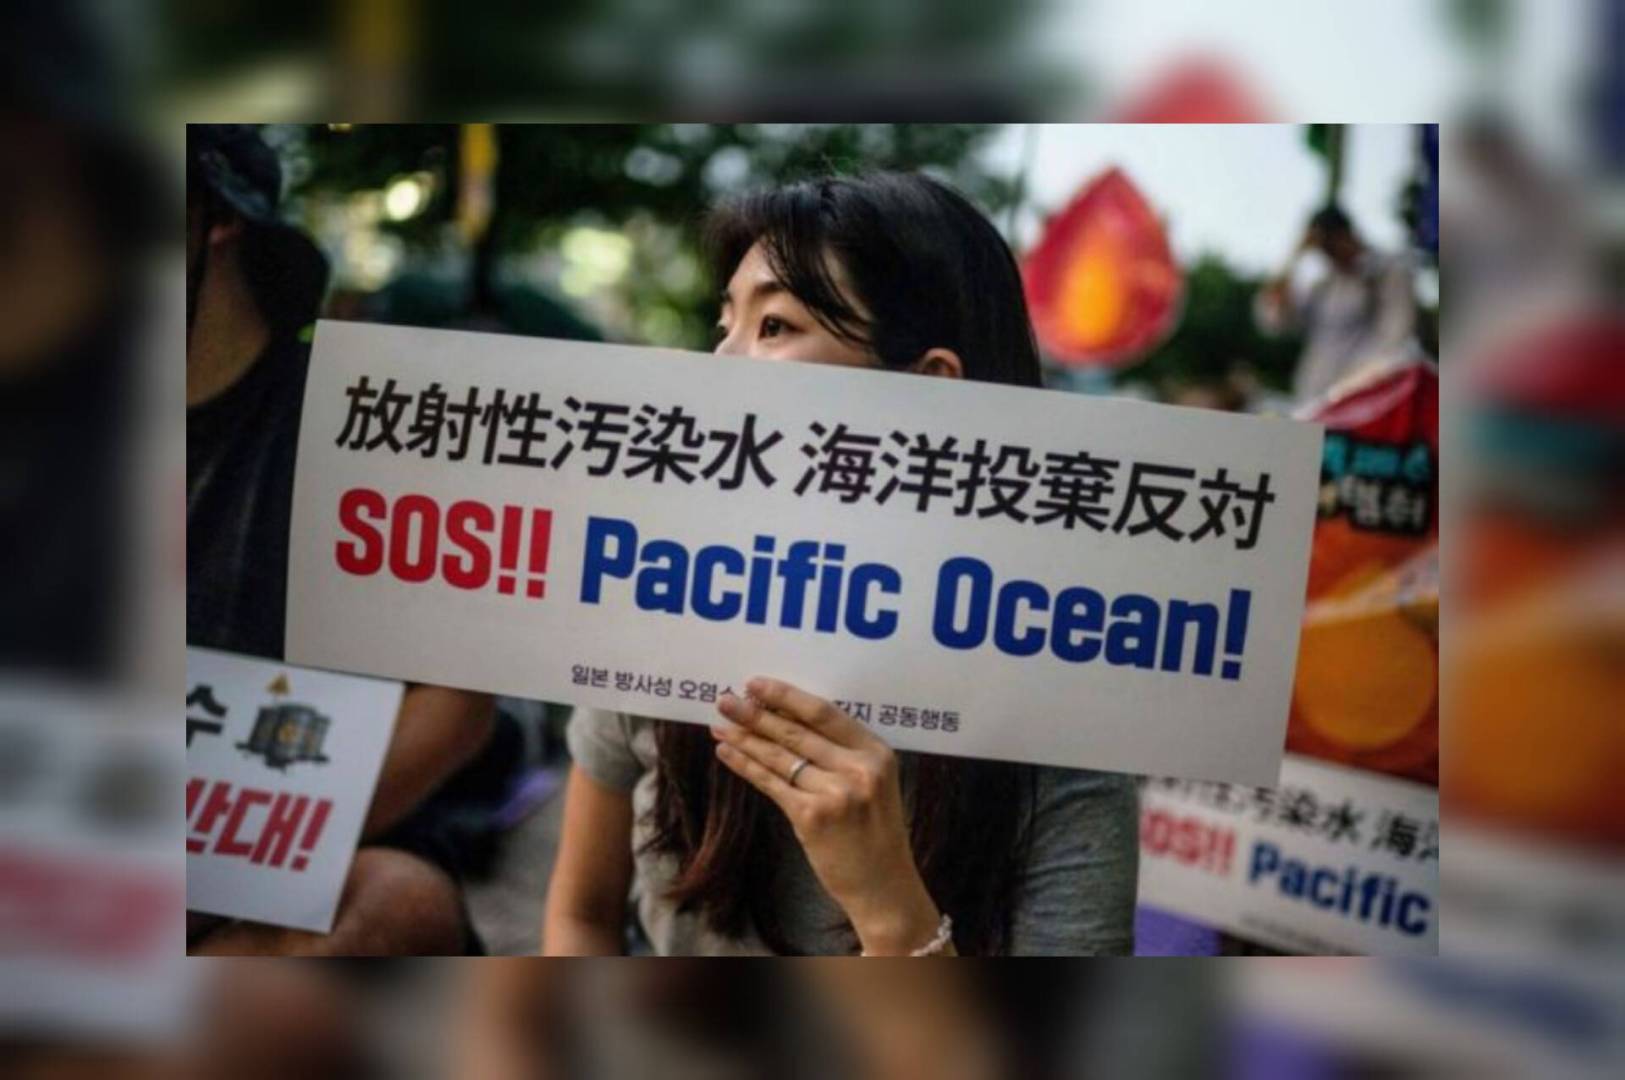 اليابان تطلق مياه فوكوشيما في المحيط و الصين تصفها بخطوة أنانية وغير مسؤولة وتحظر المأكولات البحرية